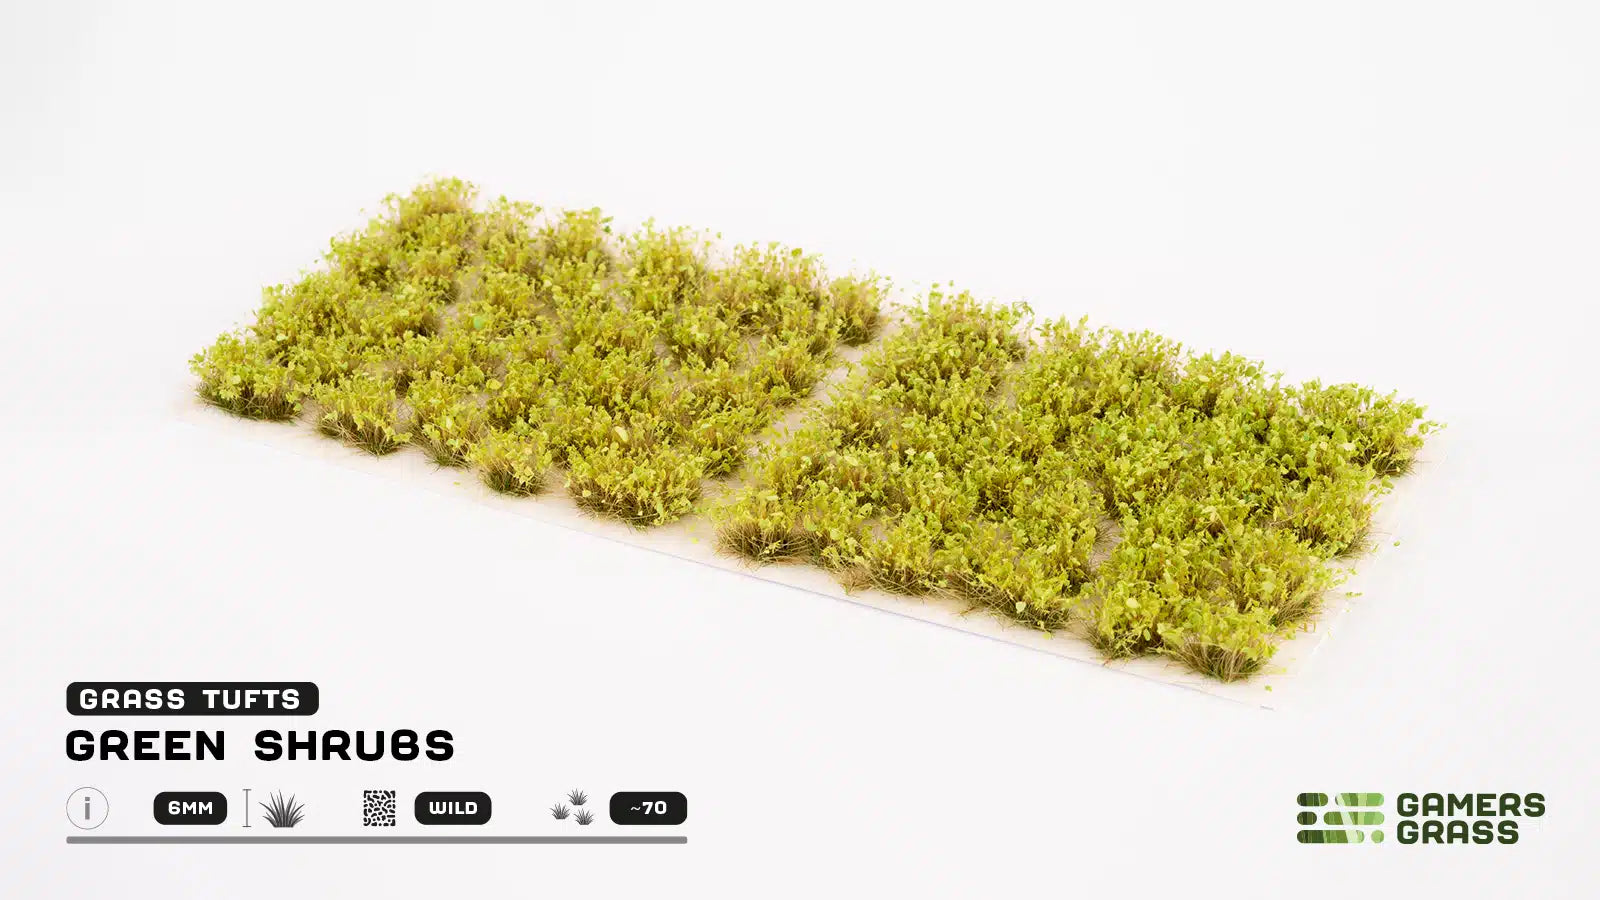 GamersGrass - Tufts - Green Shrubs 6mm | Boutique FDB